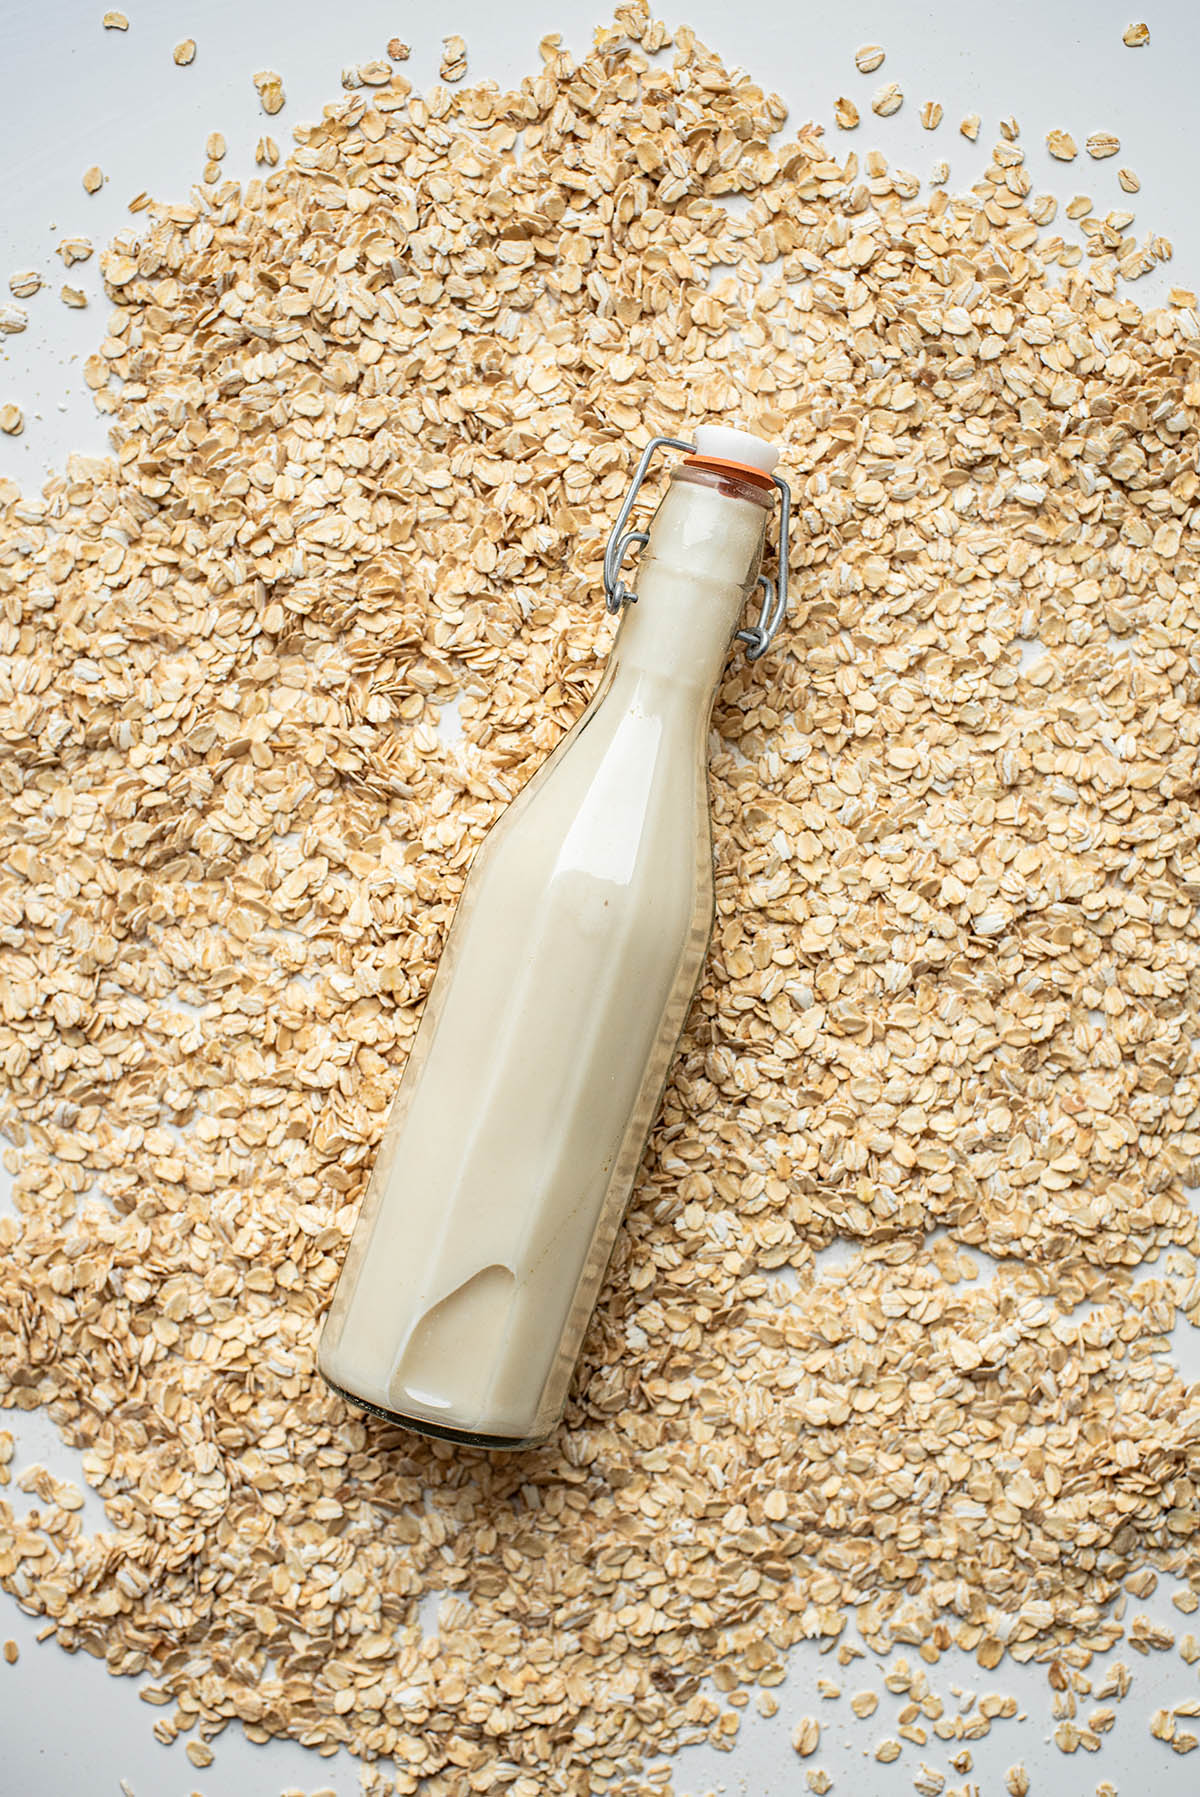 Oat milk in a flip-top glass bottle lying in a pile of oats.